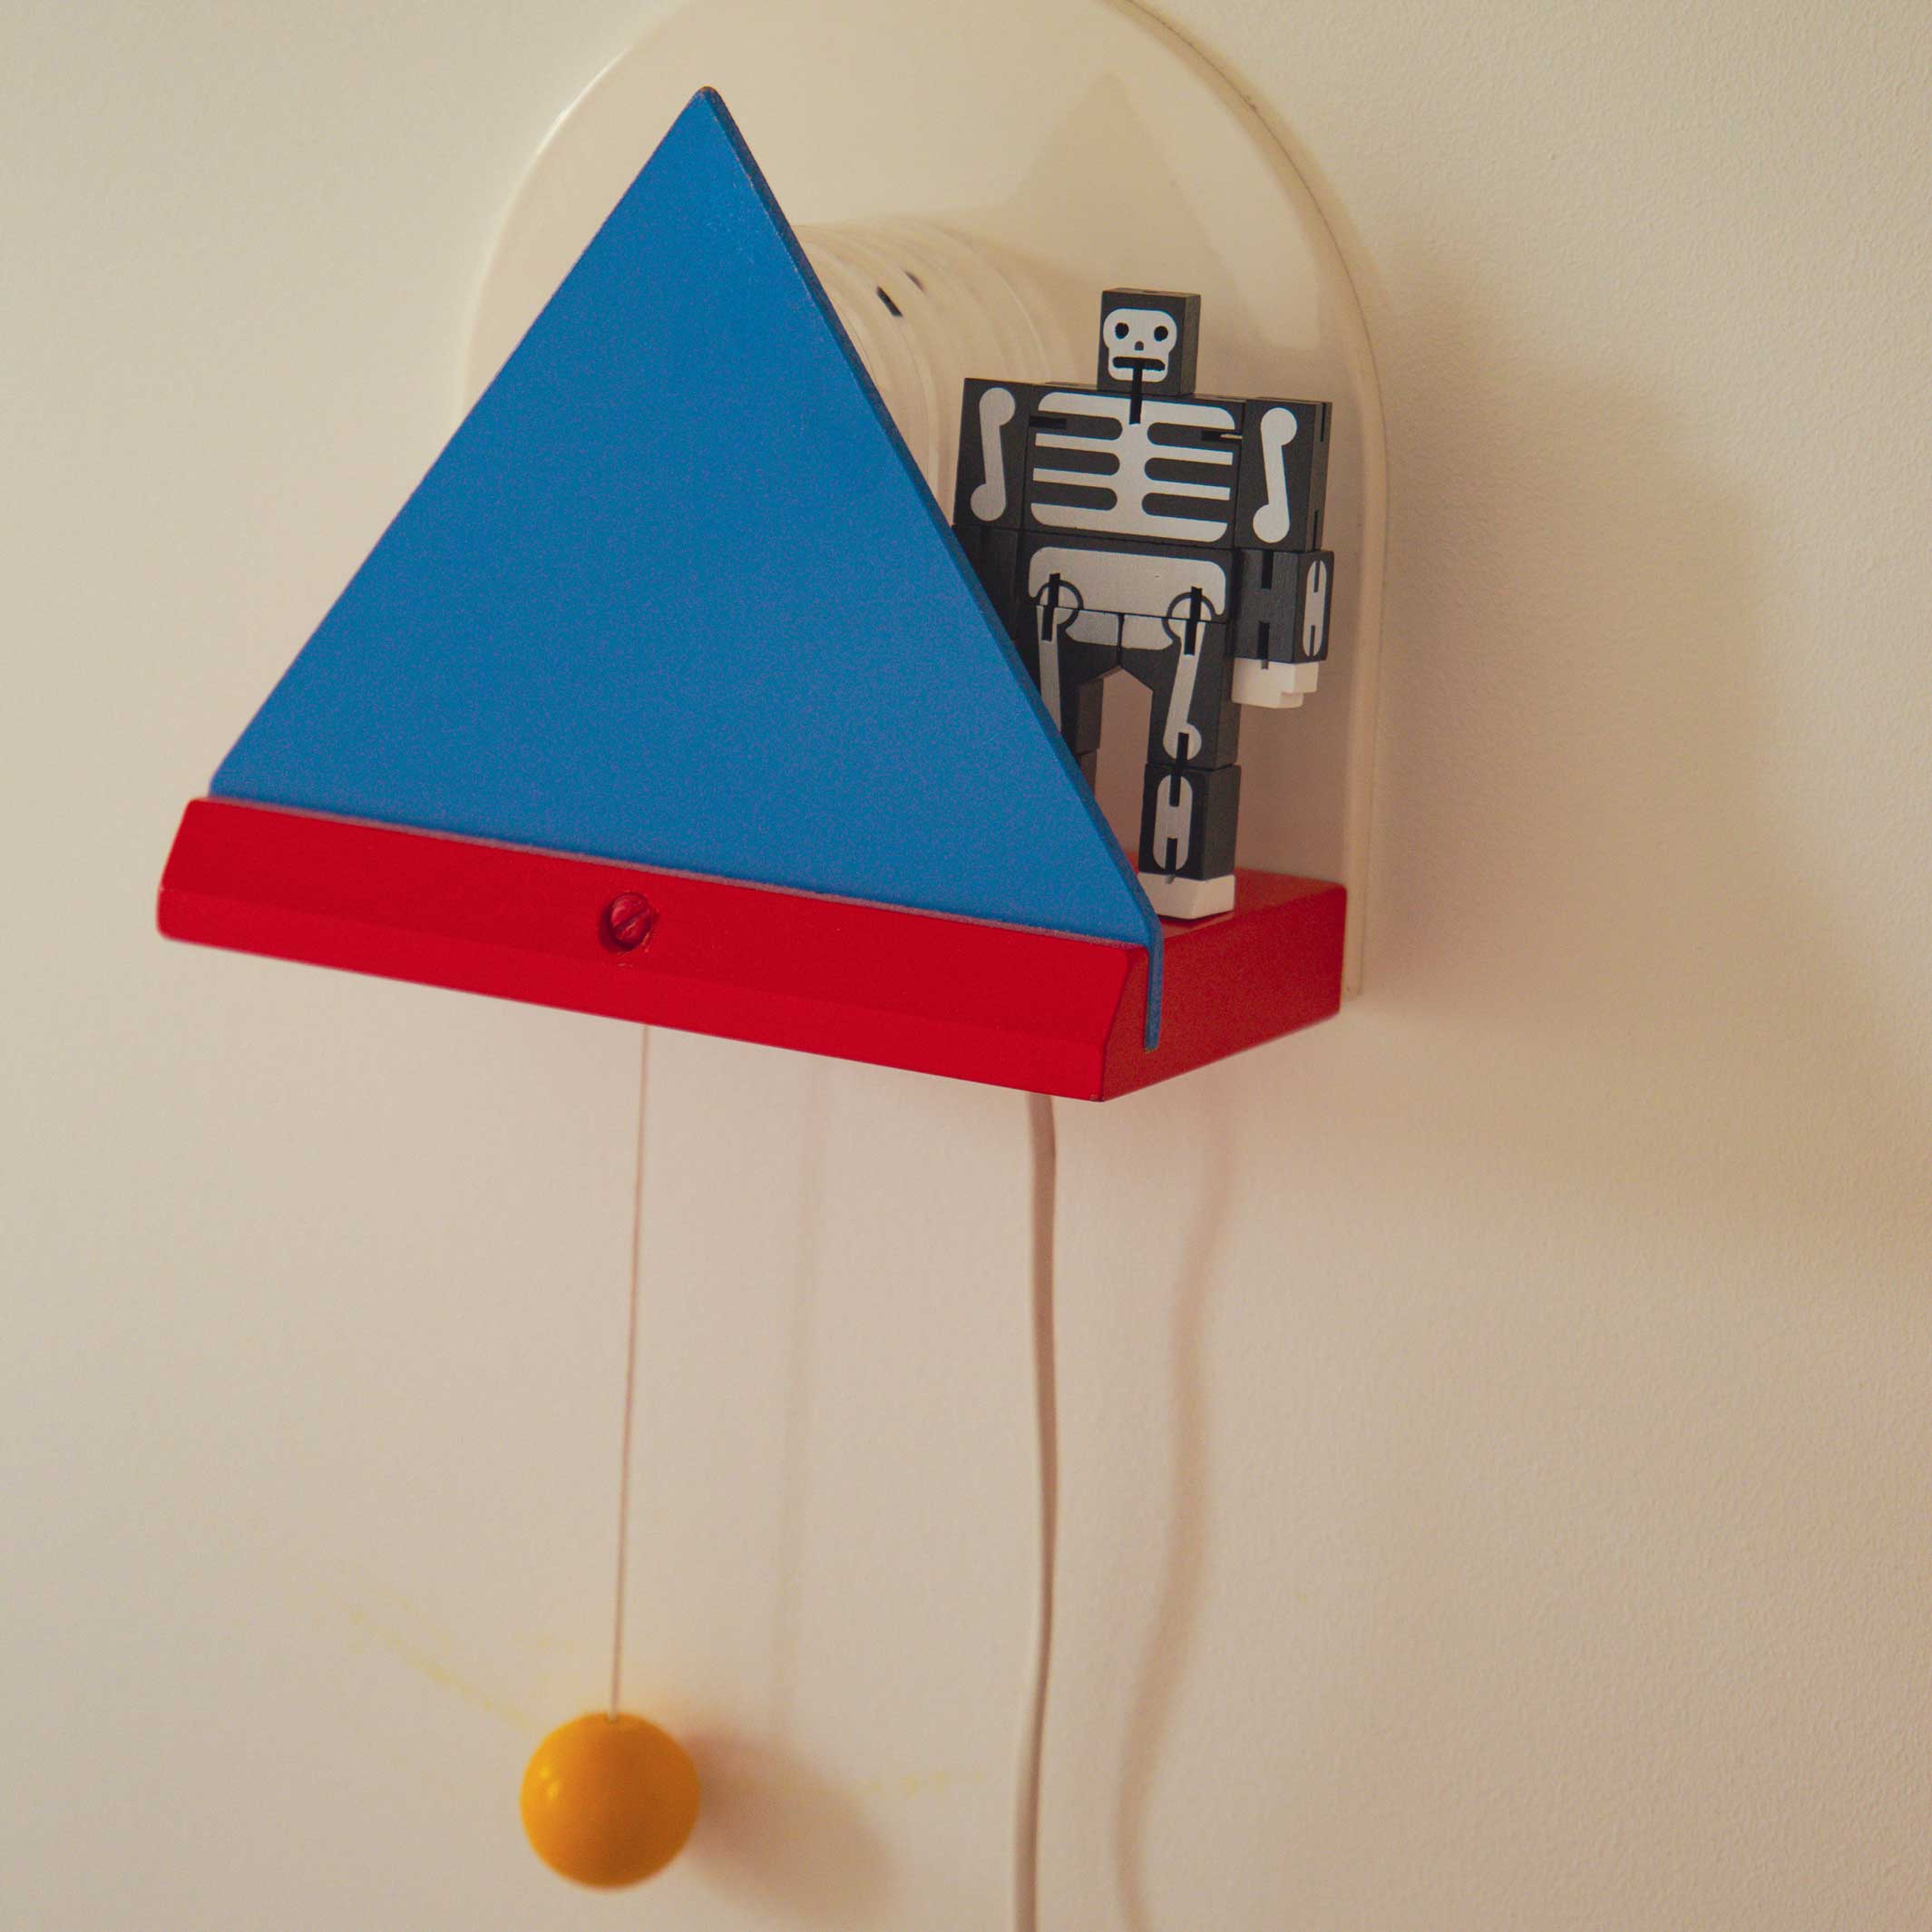 CUBEBOT® Micro SQUELETTE | ROBOTS PUZZLES 3D | David Semaines | Sont conscients